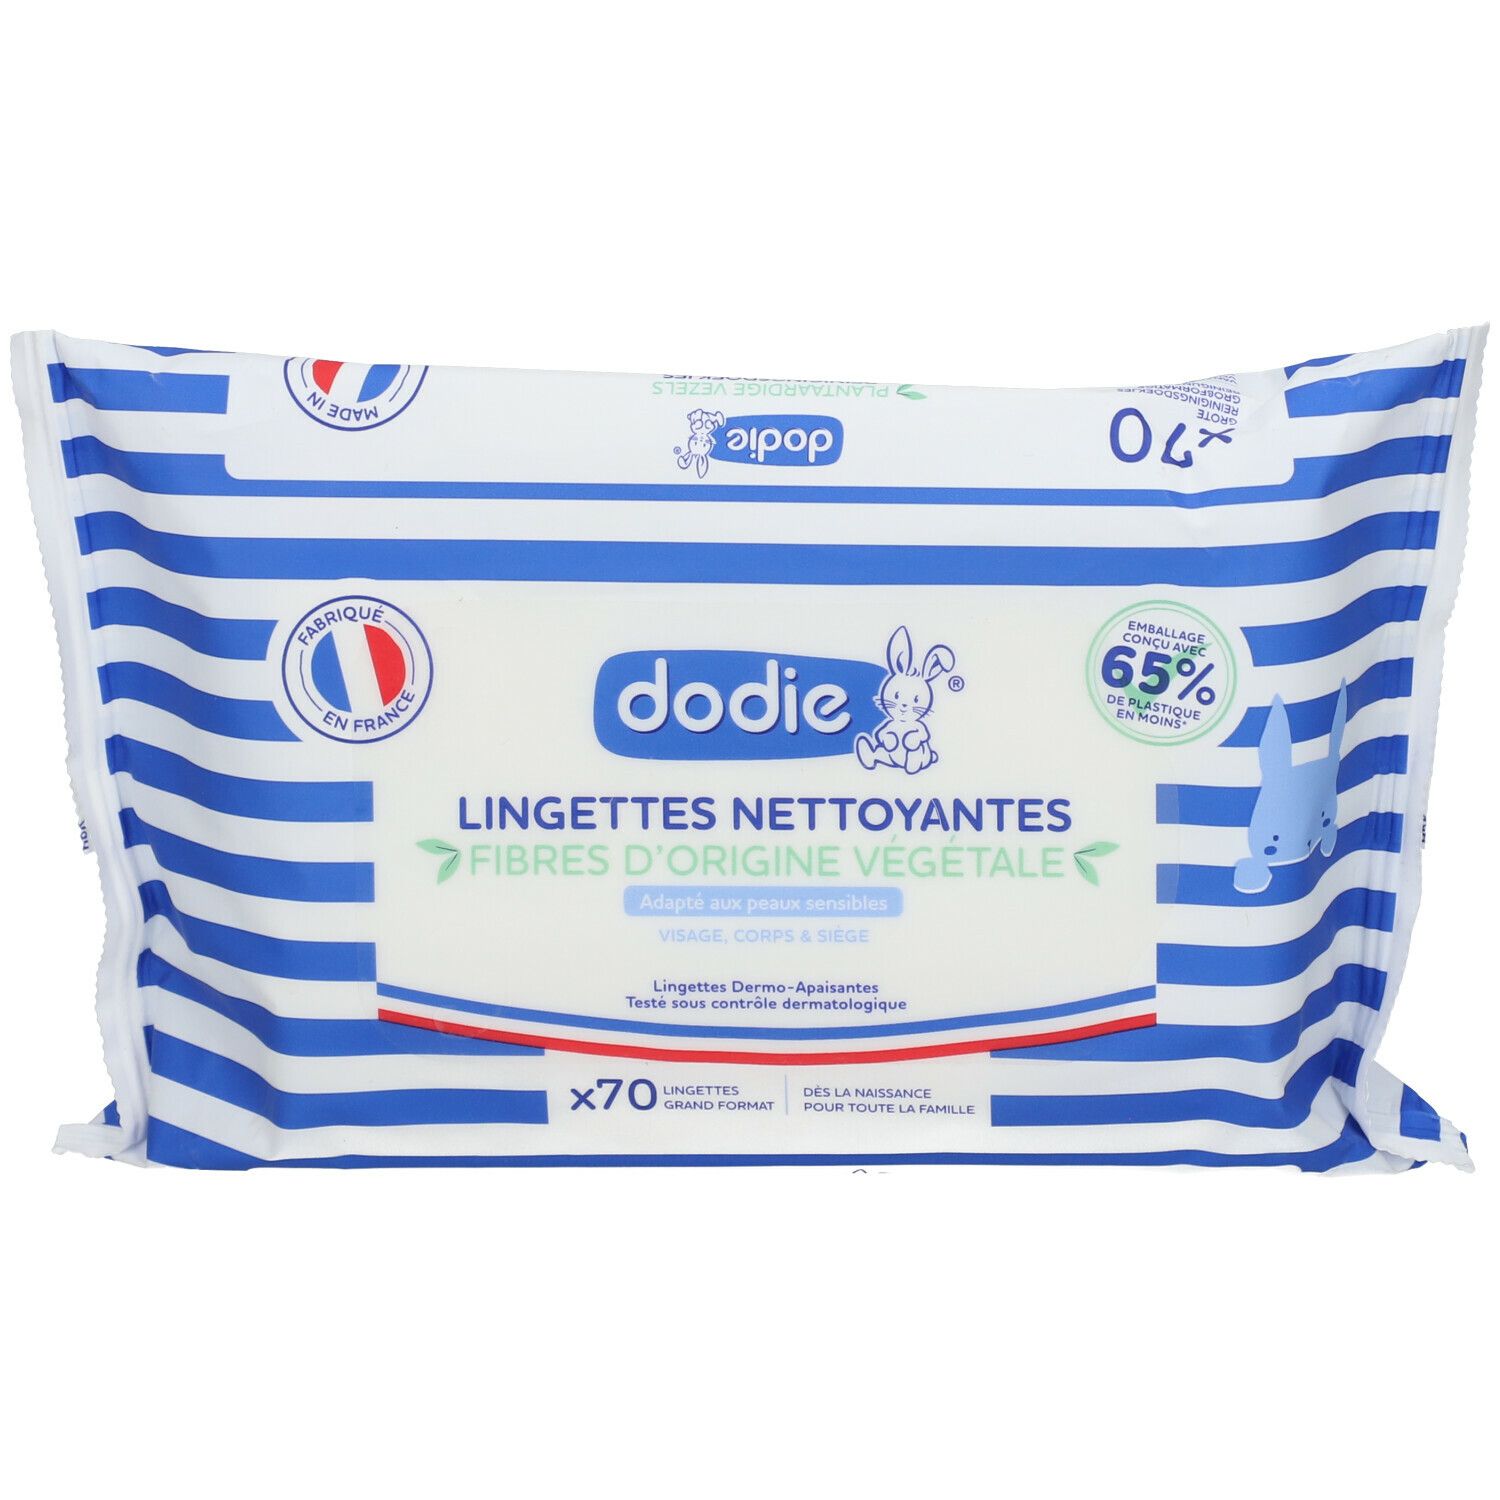 Dodie® Lingettes Nettoyantes Dermo-apaisantes 3 en 1